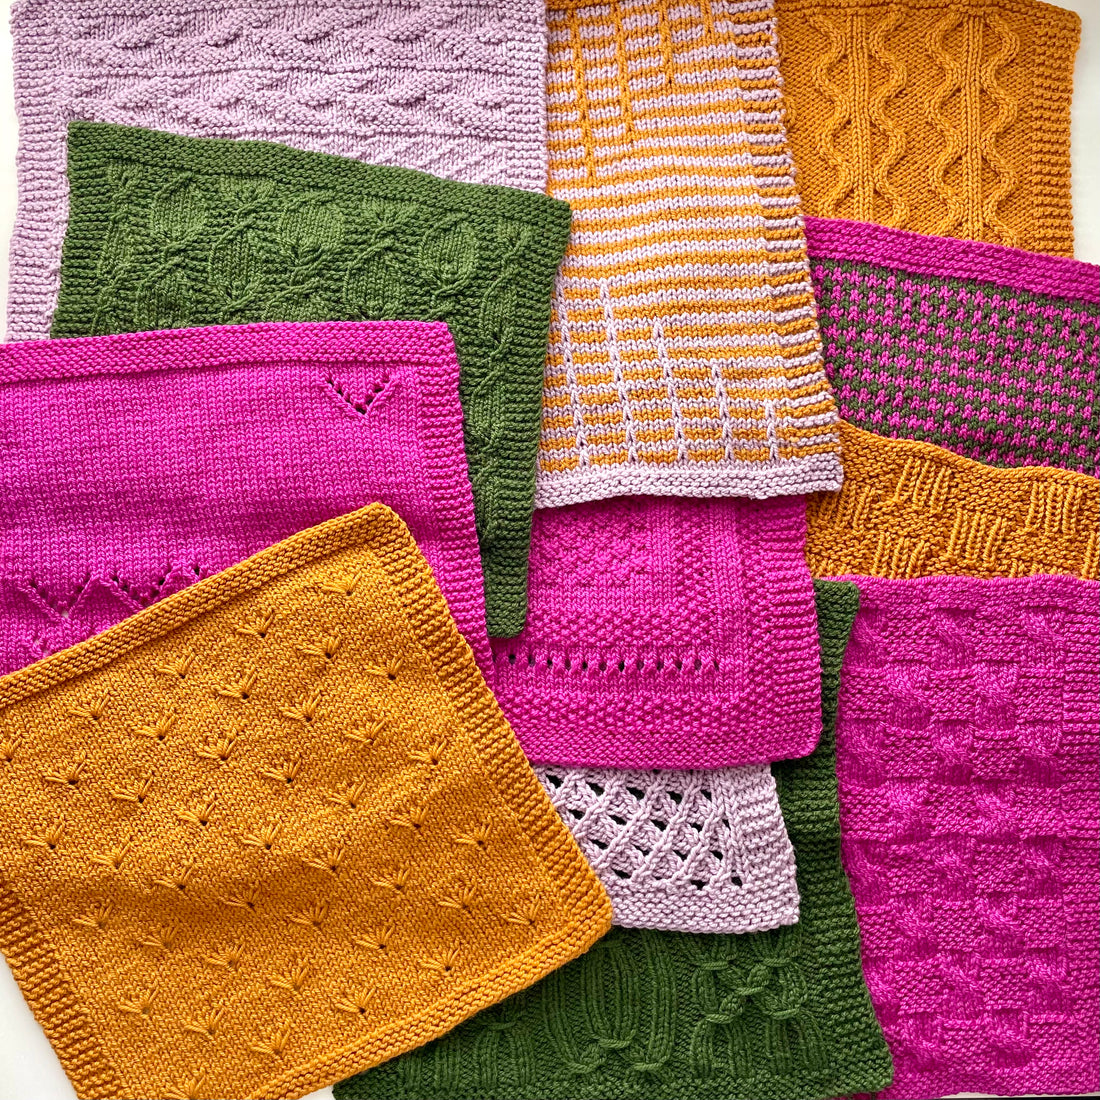 Designer Stitch Happy Knitting Starter Kit: 20 Piece Knitting Kit